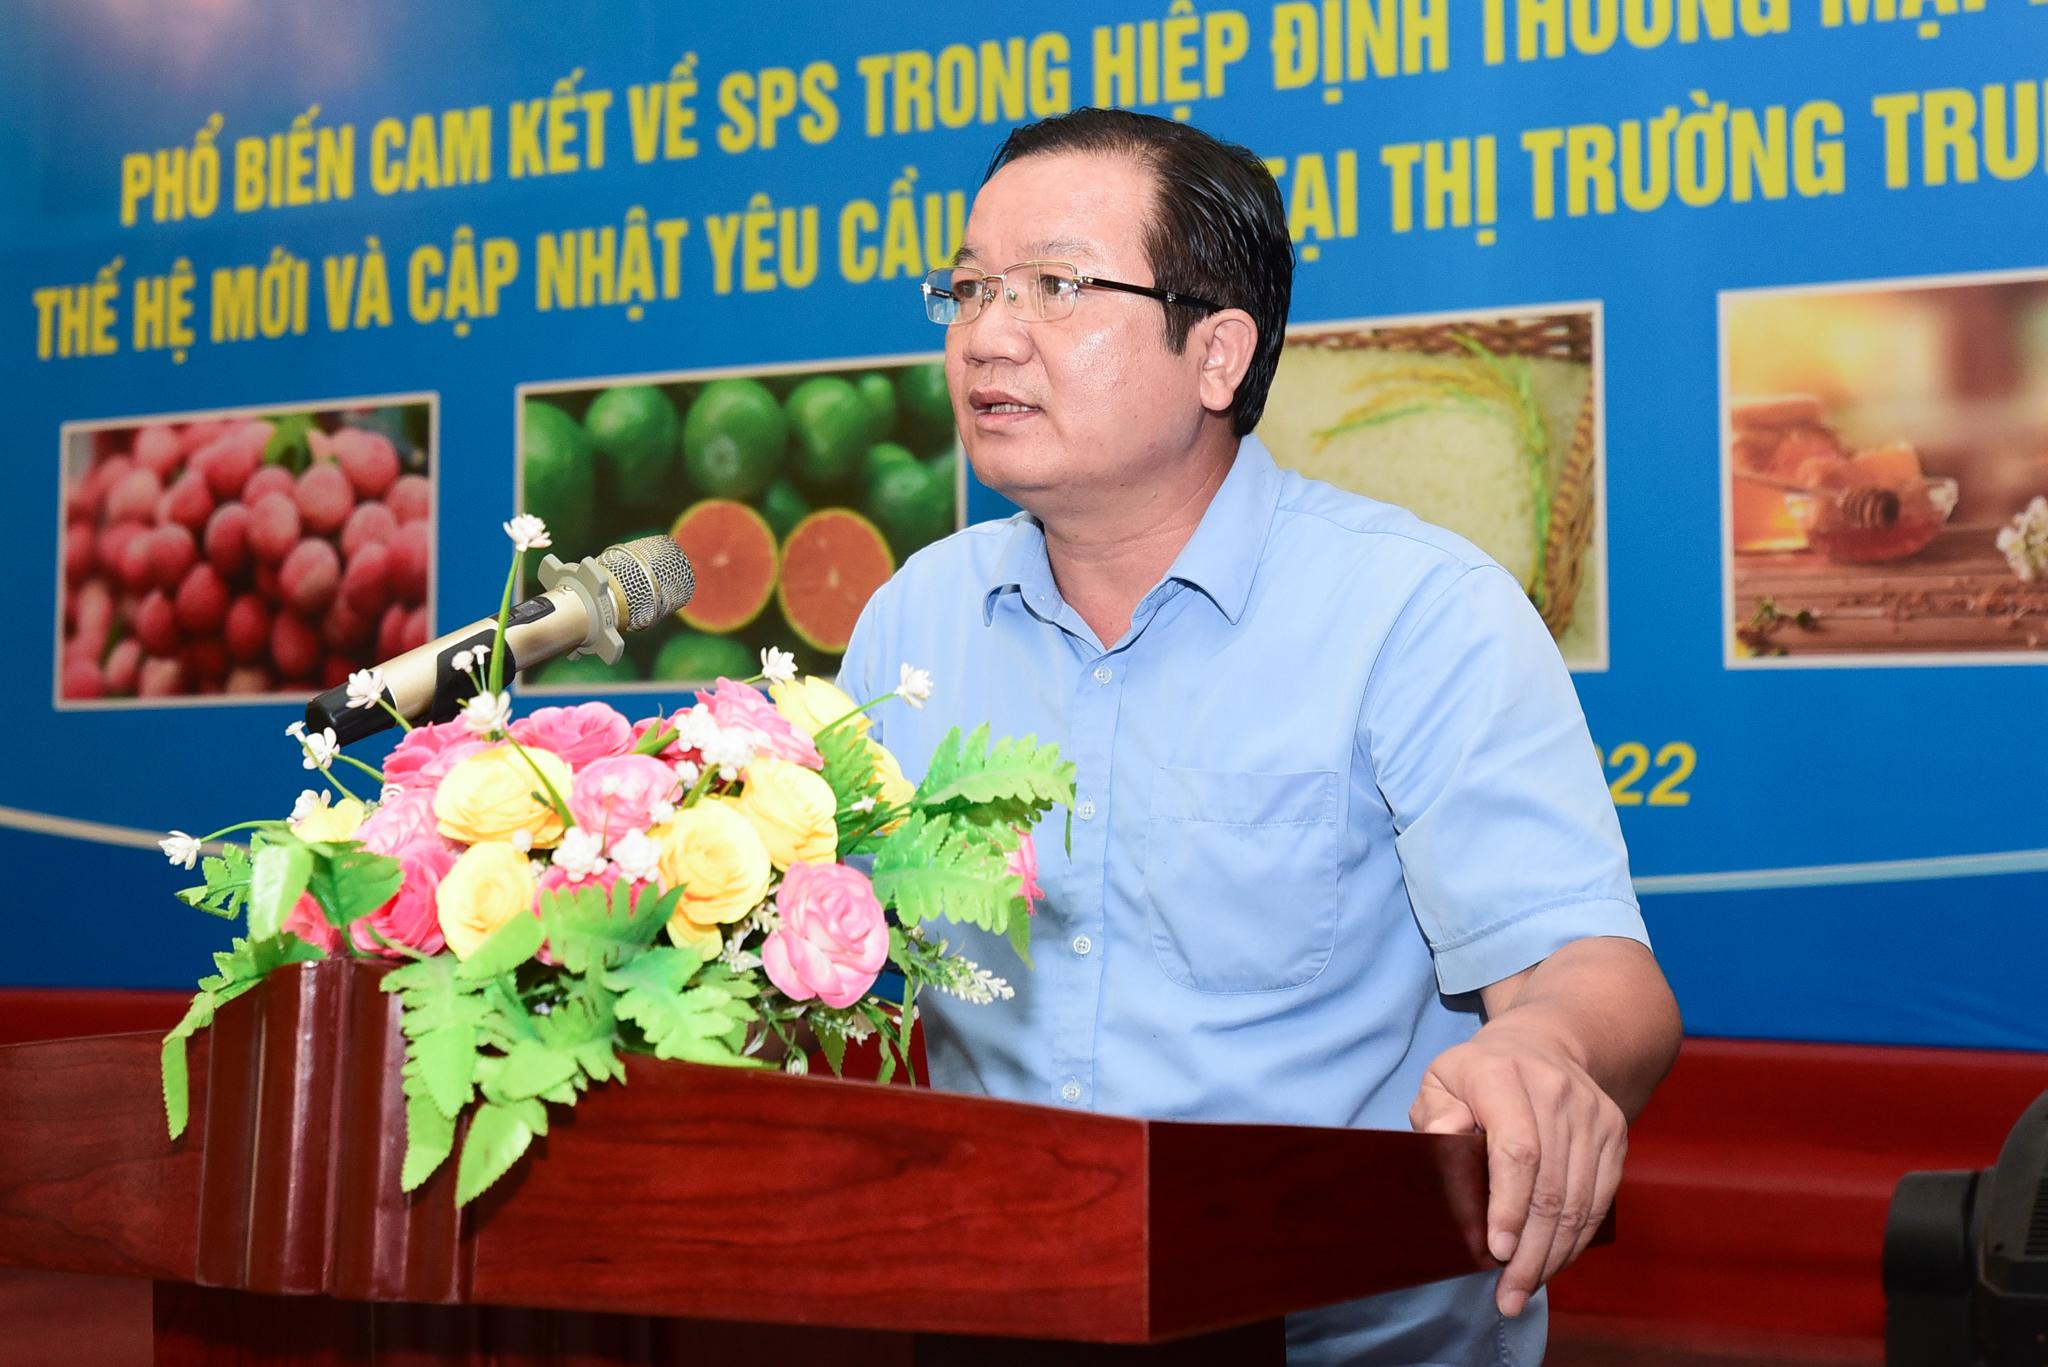 Phó Giám đốc sở NN-PTNT Bắc Giang Lê Bá Thành khẳng định đáp ứng các yêu cầu SPS là cơ hội để ngành nông nghiệp tỉnh thay đổi. Ảnh: Tùng Đinh.